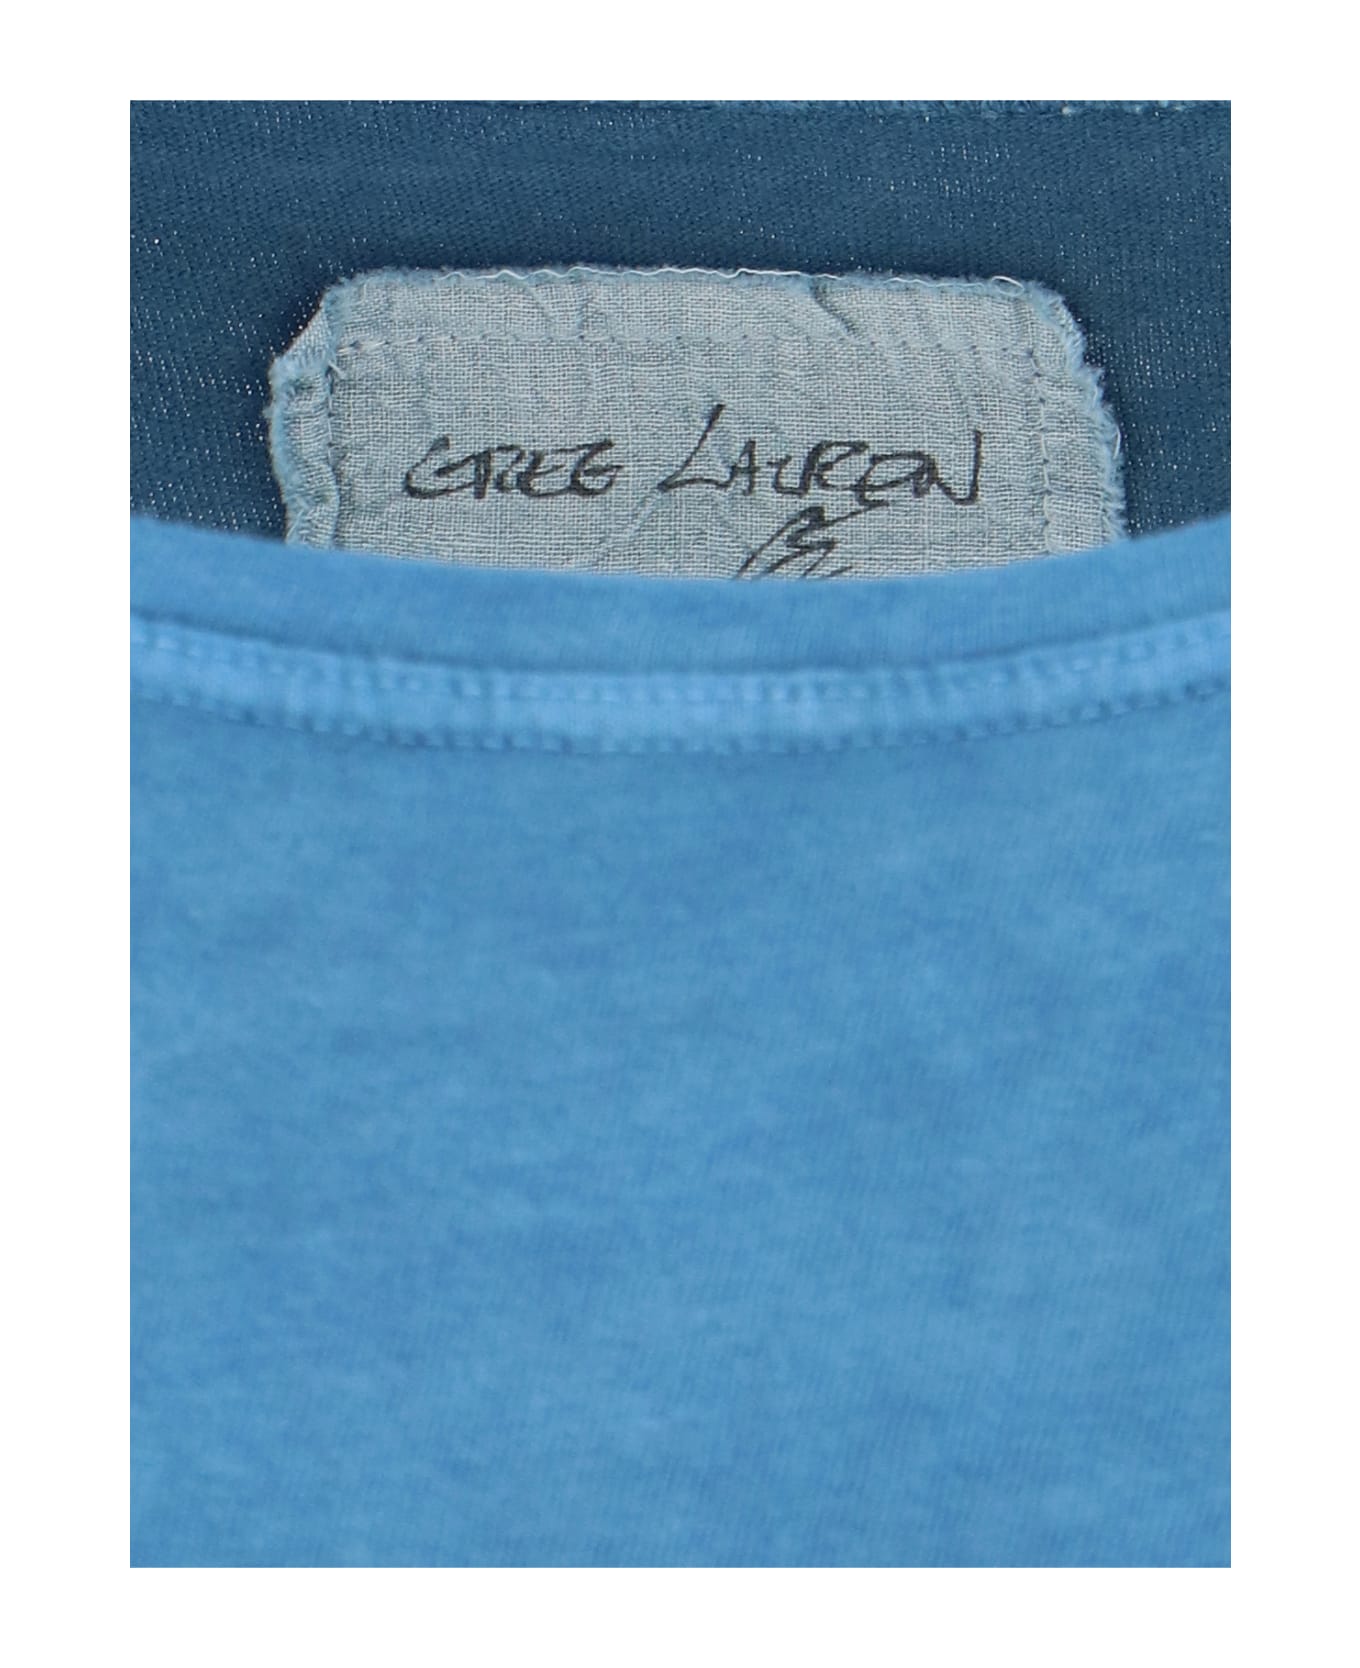 Greg Lauren T-Shirt - Light blue